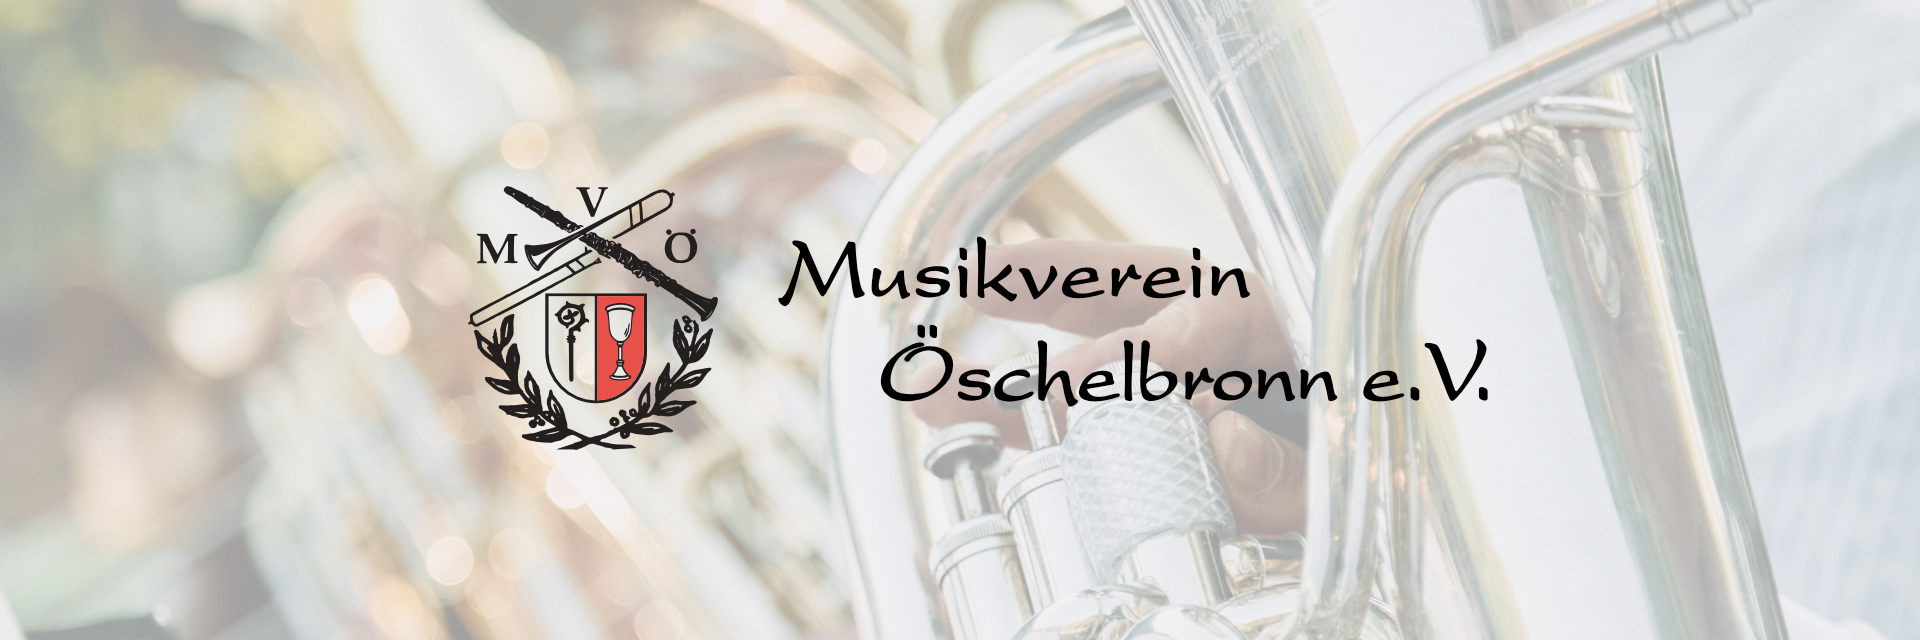 Musikverein Öschelbronn e.V.